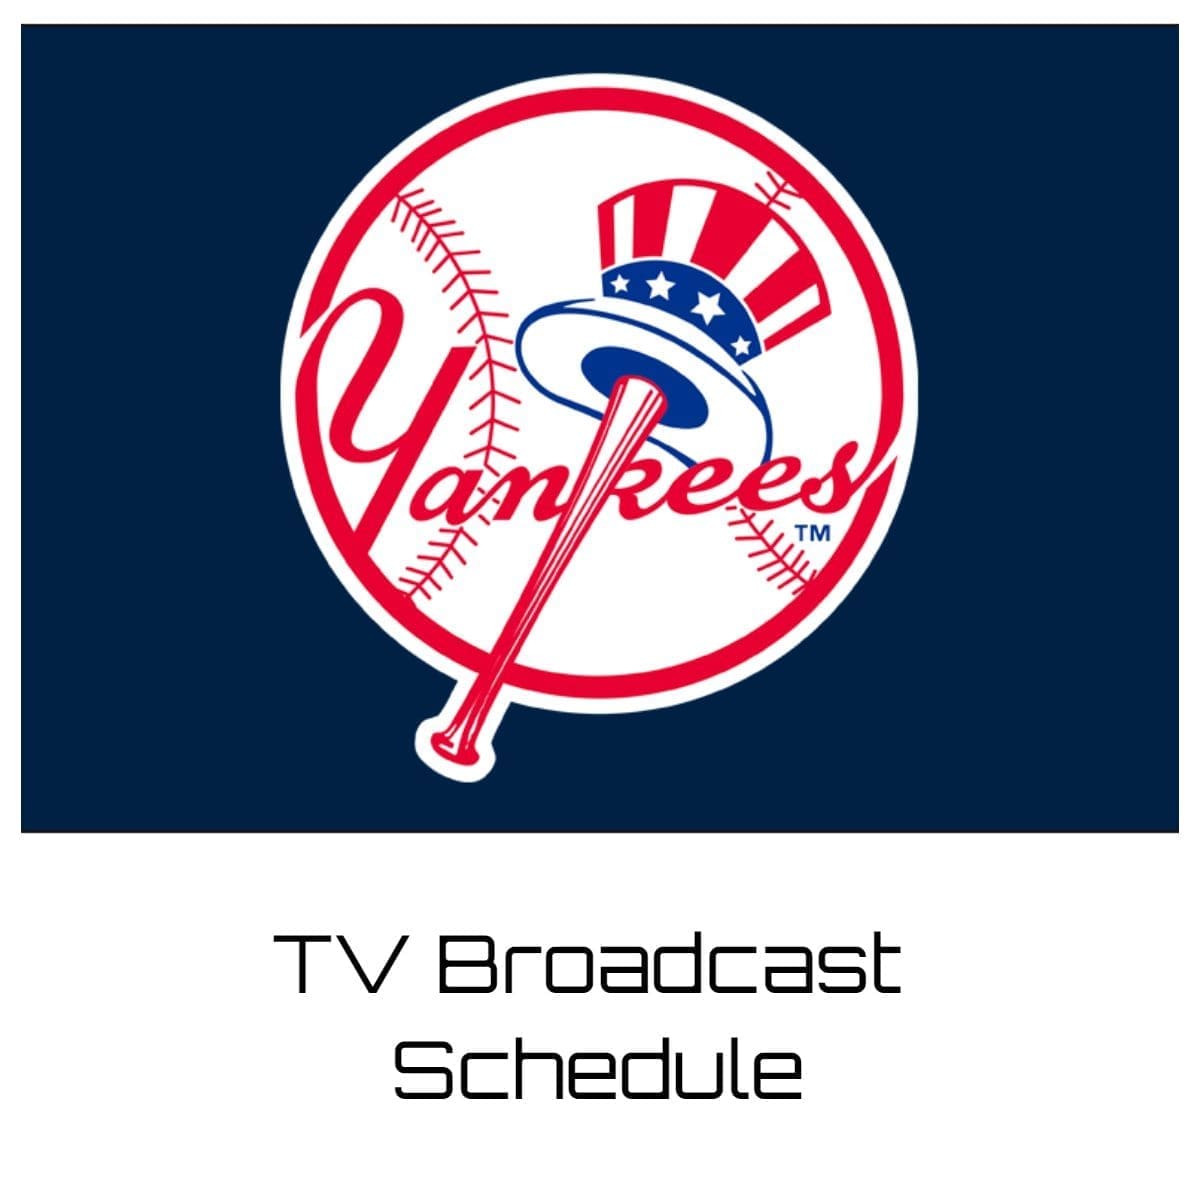 New York Yankees TV Broadcast Schedule